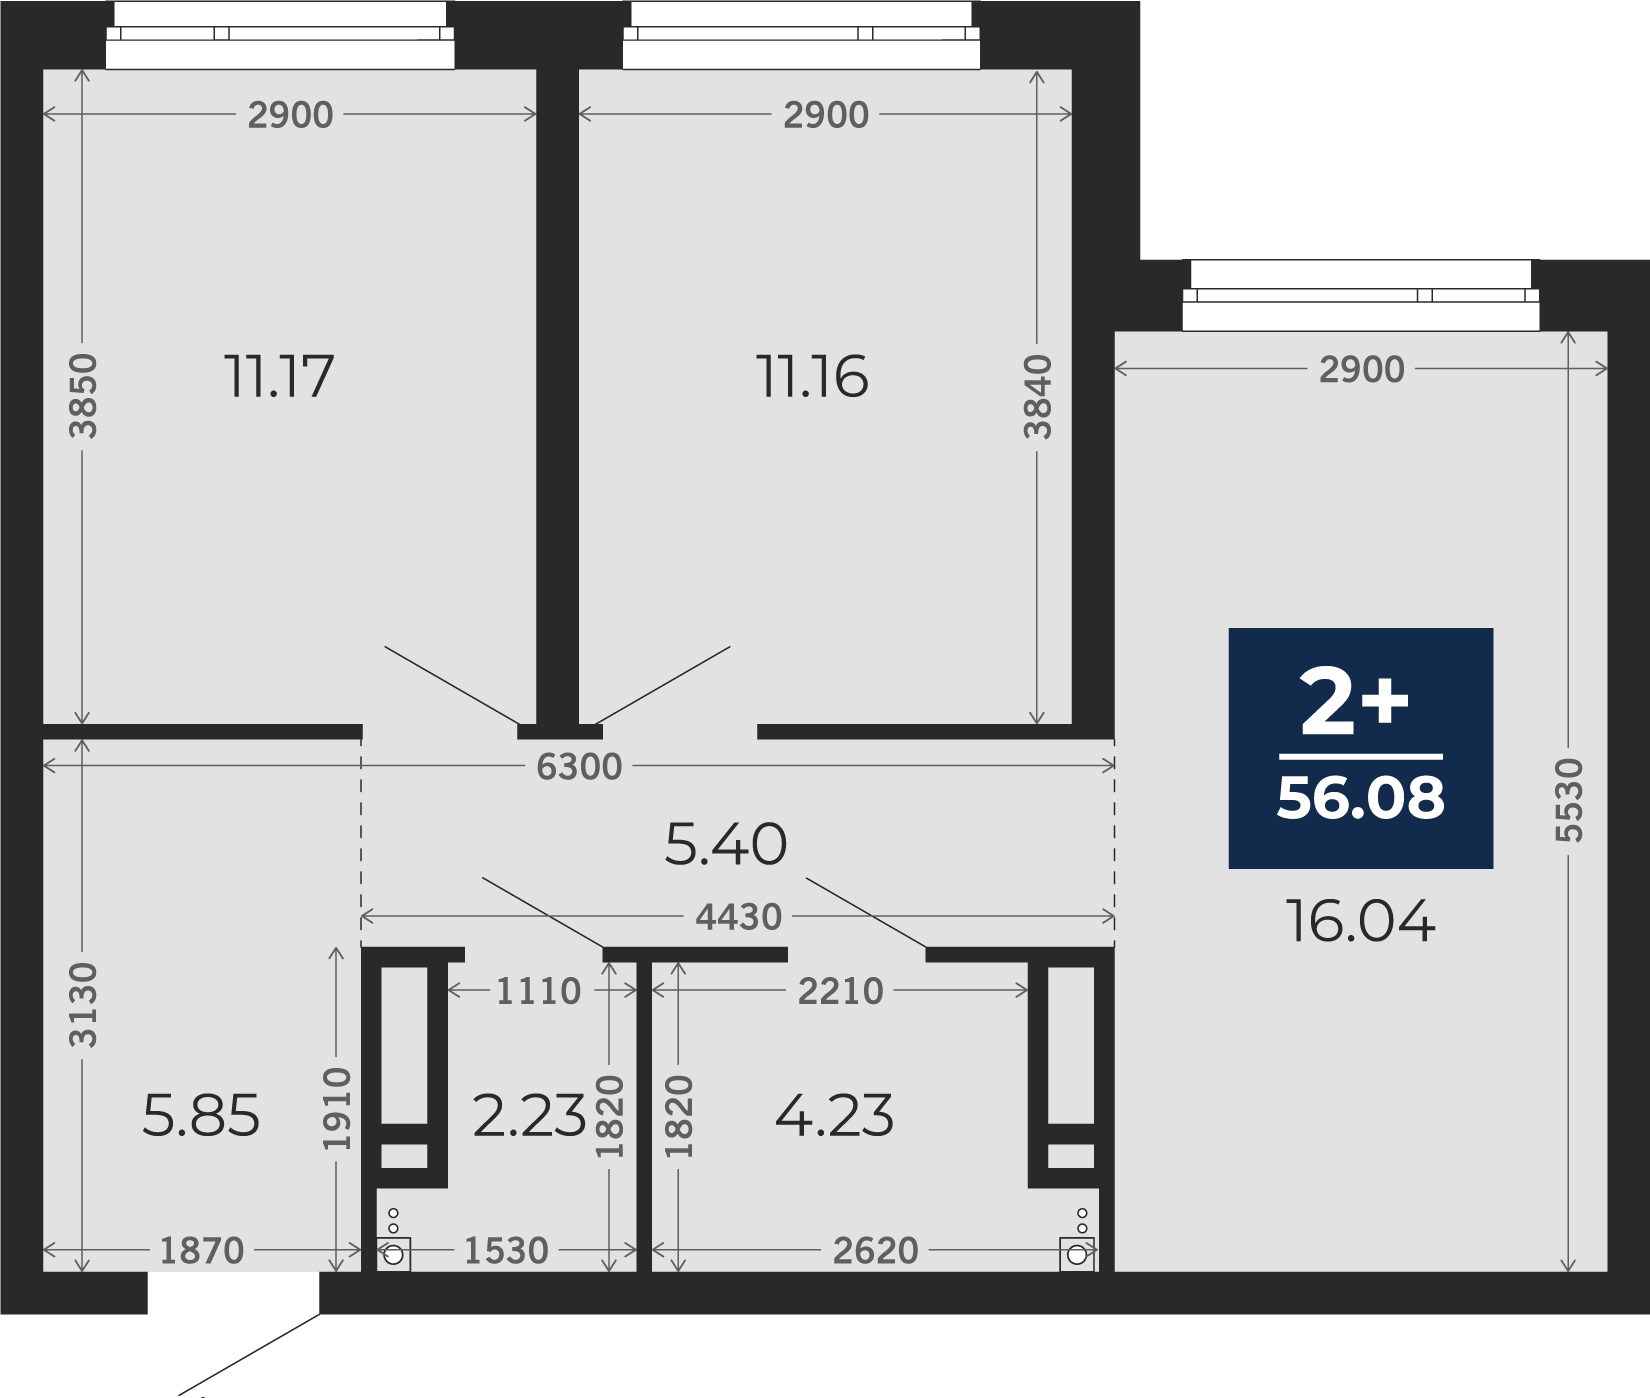 Квартира № 184, 2-комнатная, 56.08 кв. м, 8 этаж